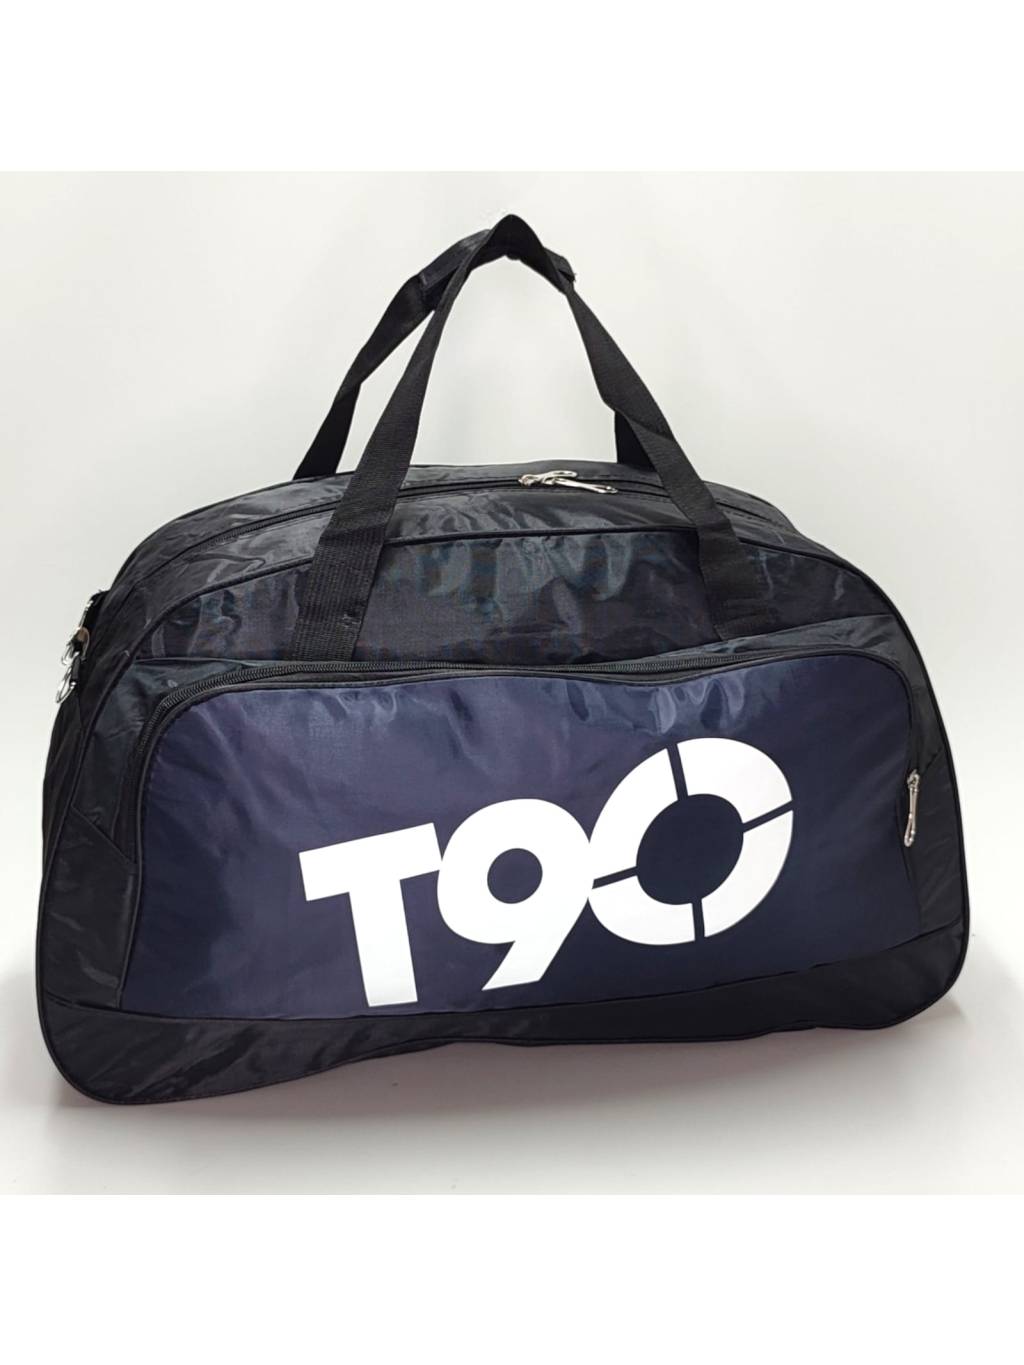 Cestovná taška B7298 tmavomodrá www.kabelky vypredaj (13)